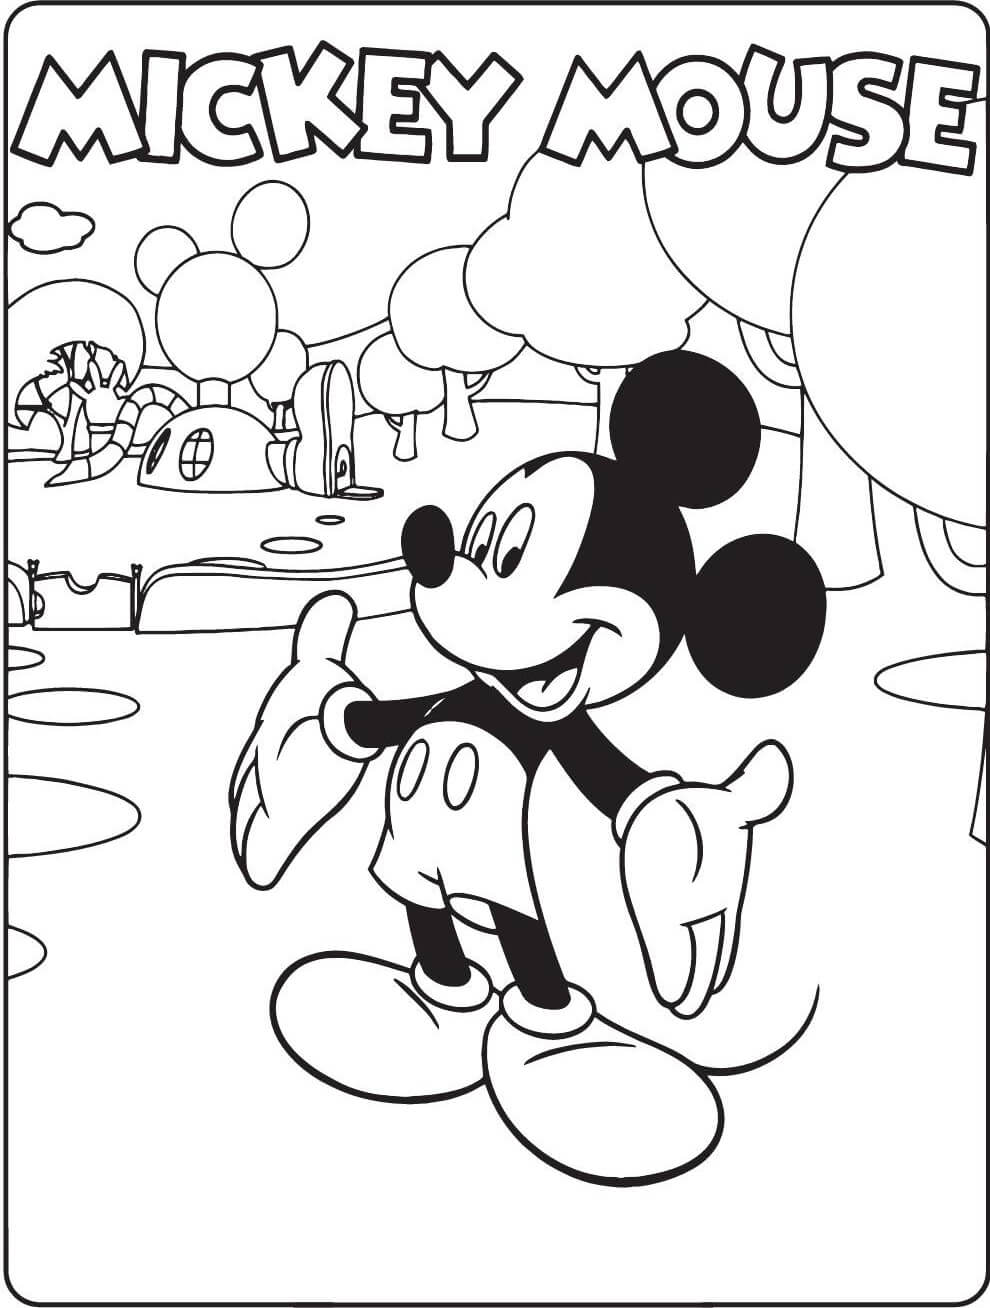 Impresionante Ratón Mickey